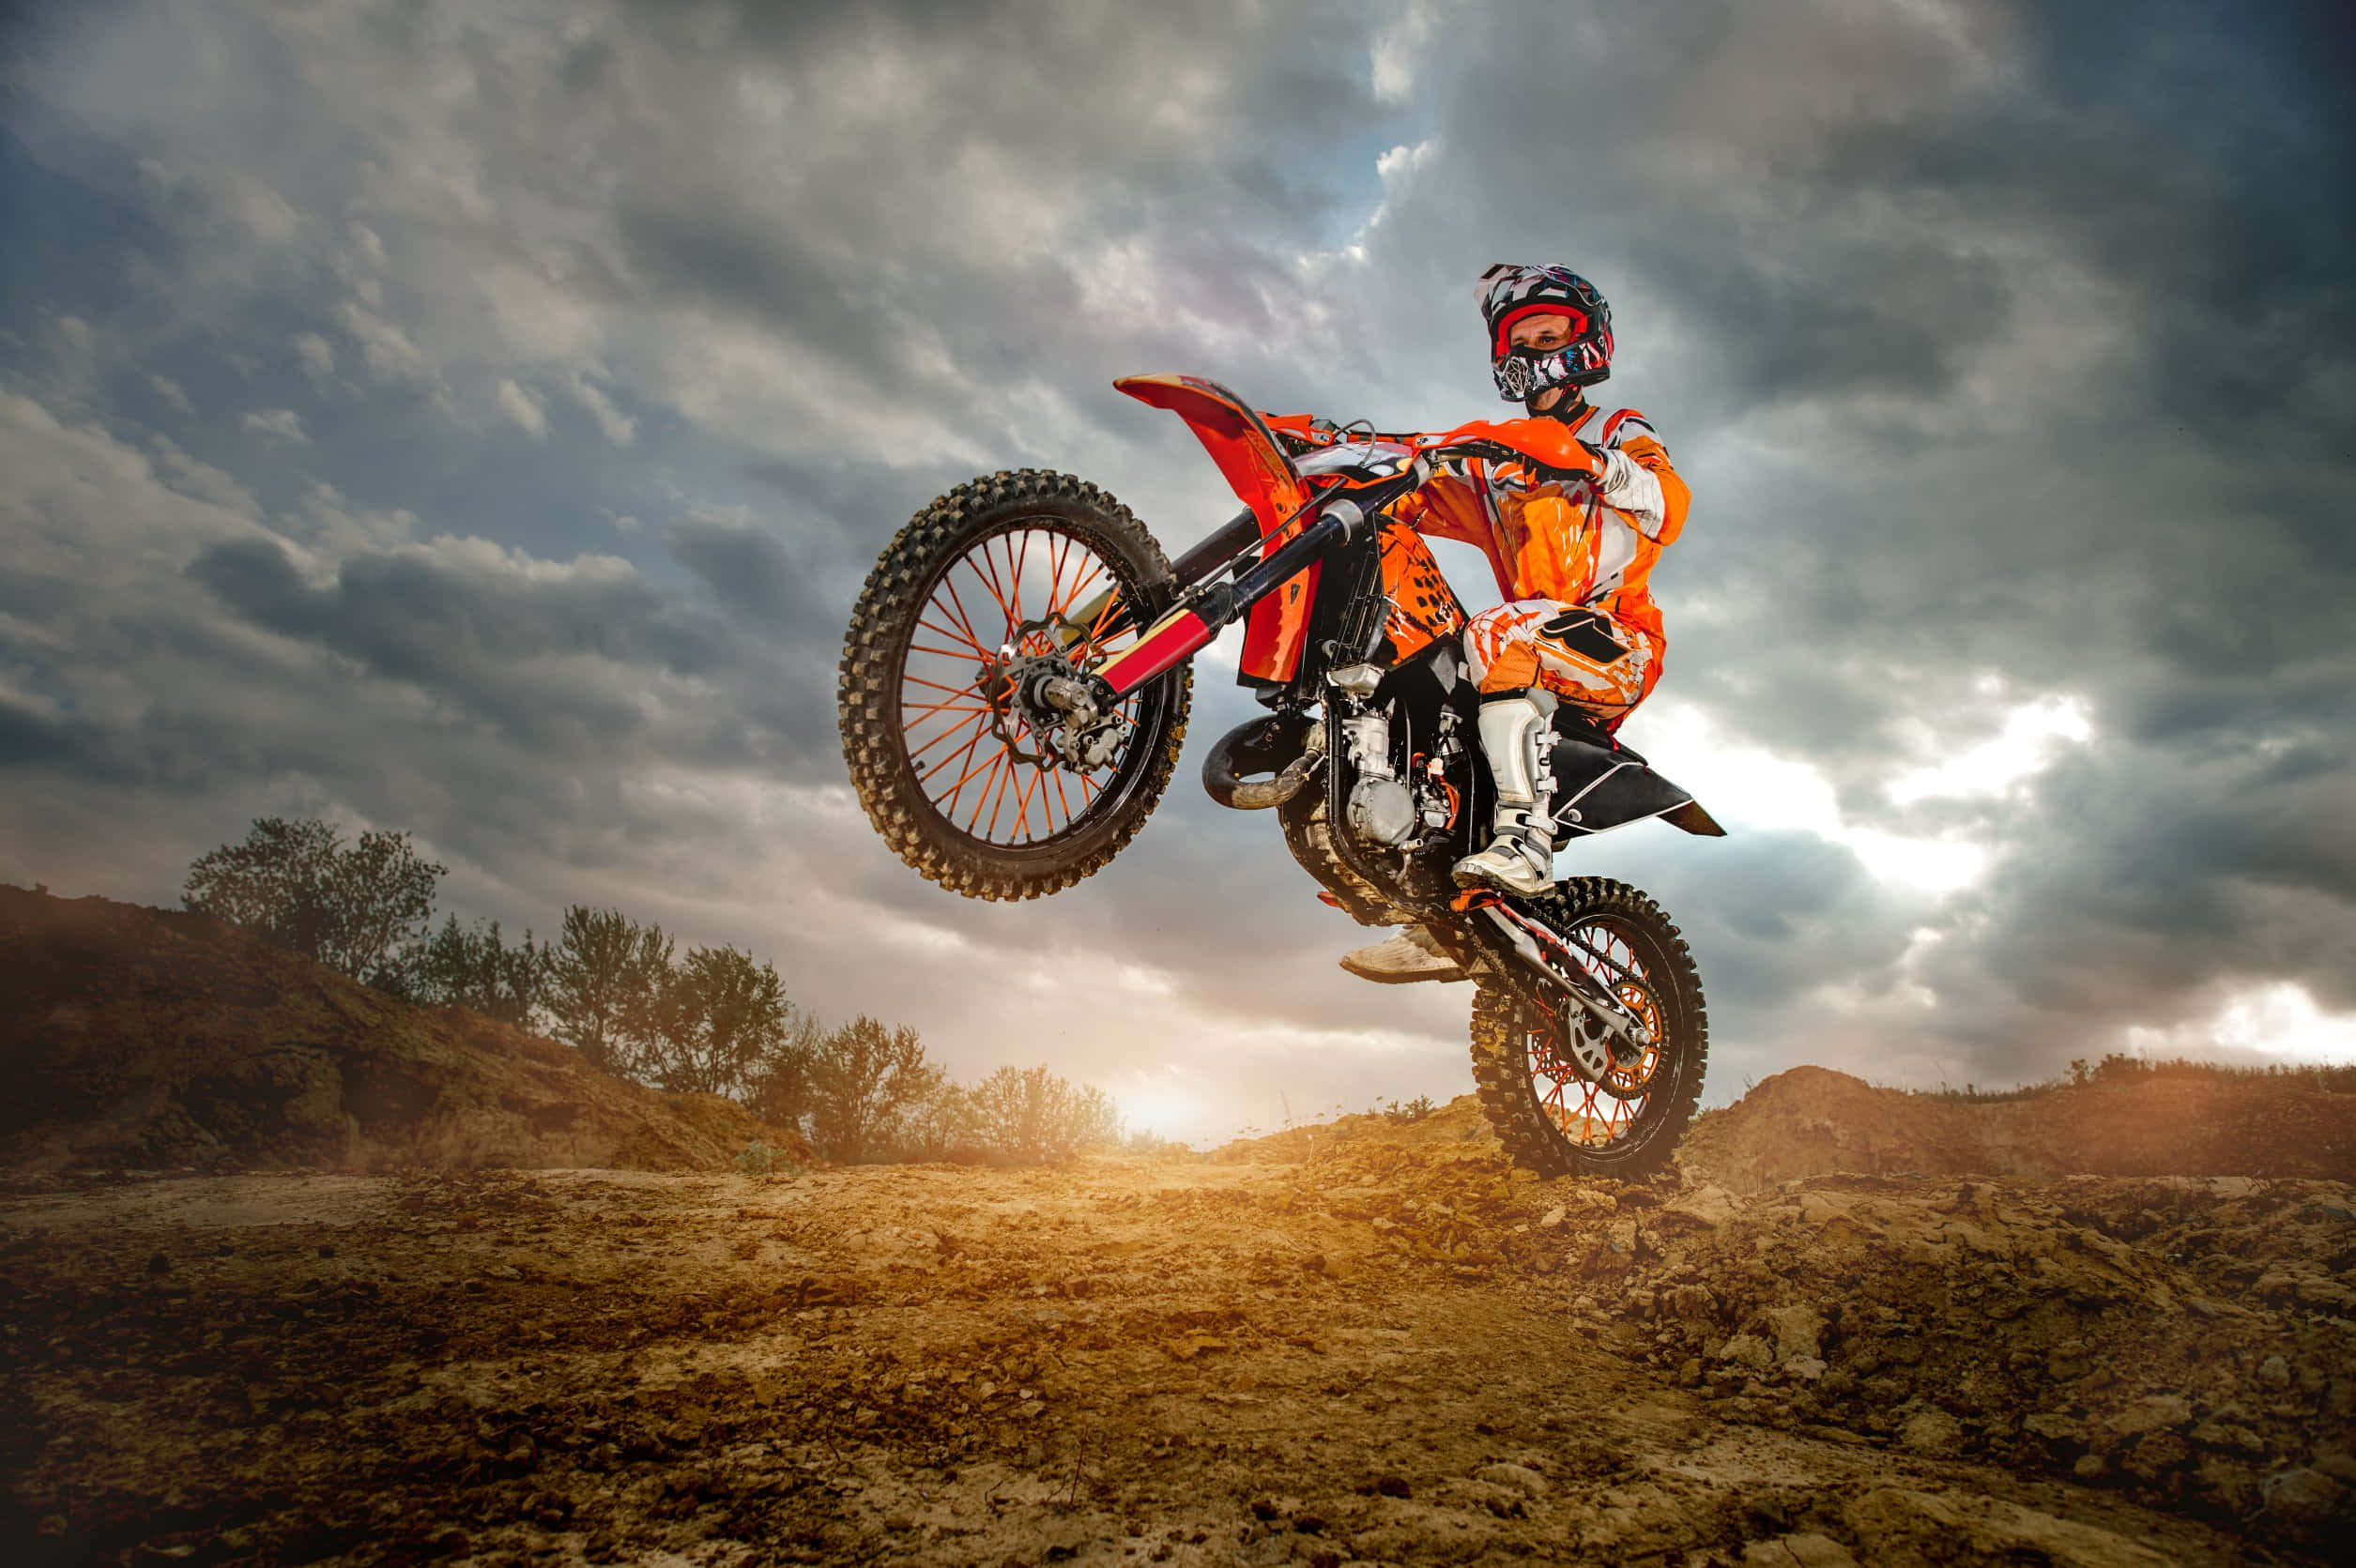 Imagemde Motocross 2510 X 1671 Pixels.